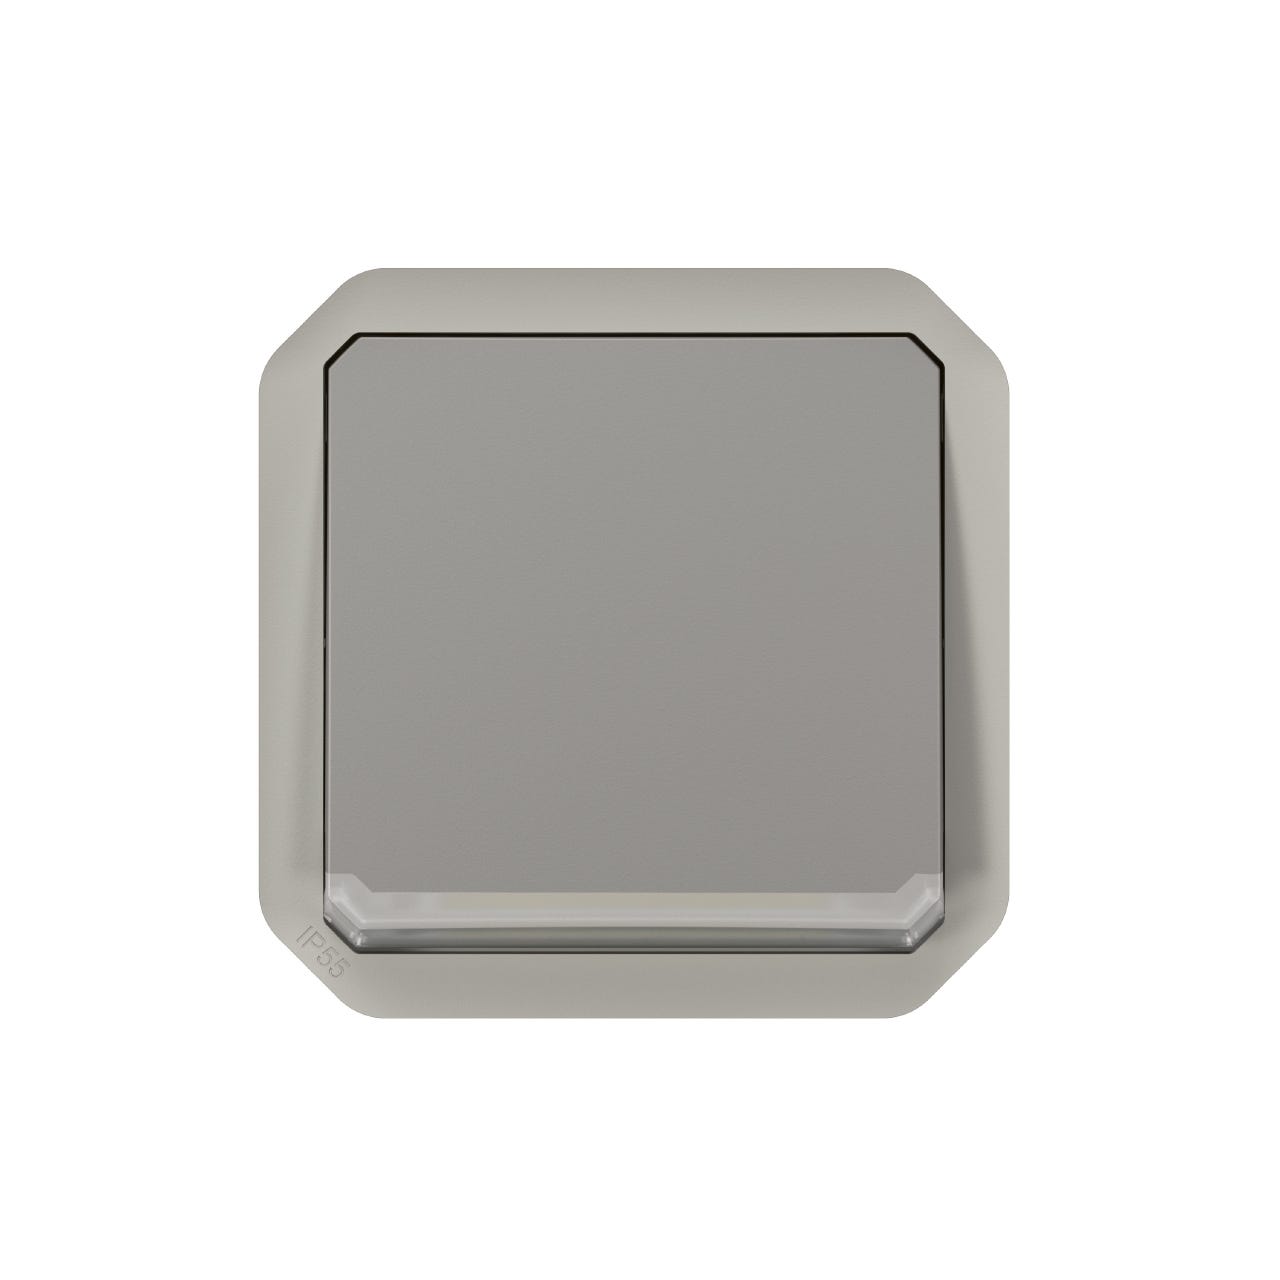 bouton poussoir - no - témoin - gris - composable - legrand plexo 069533l 0